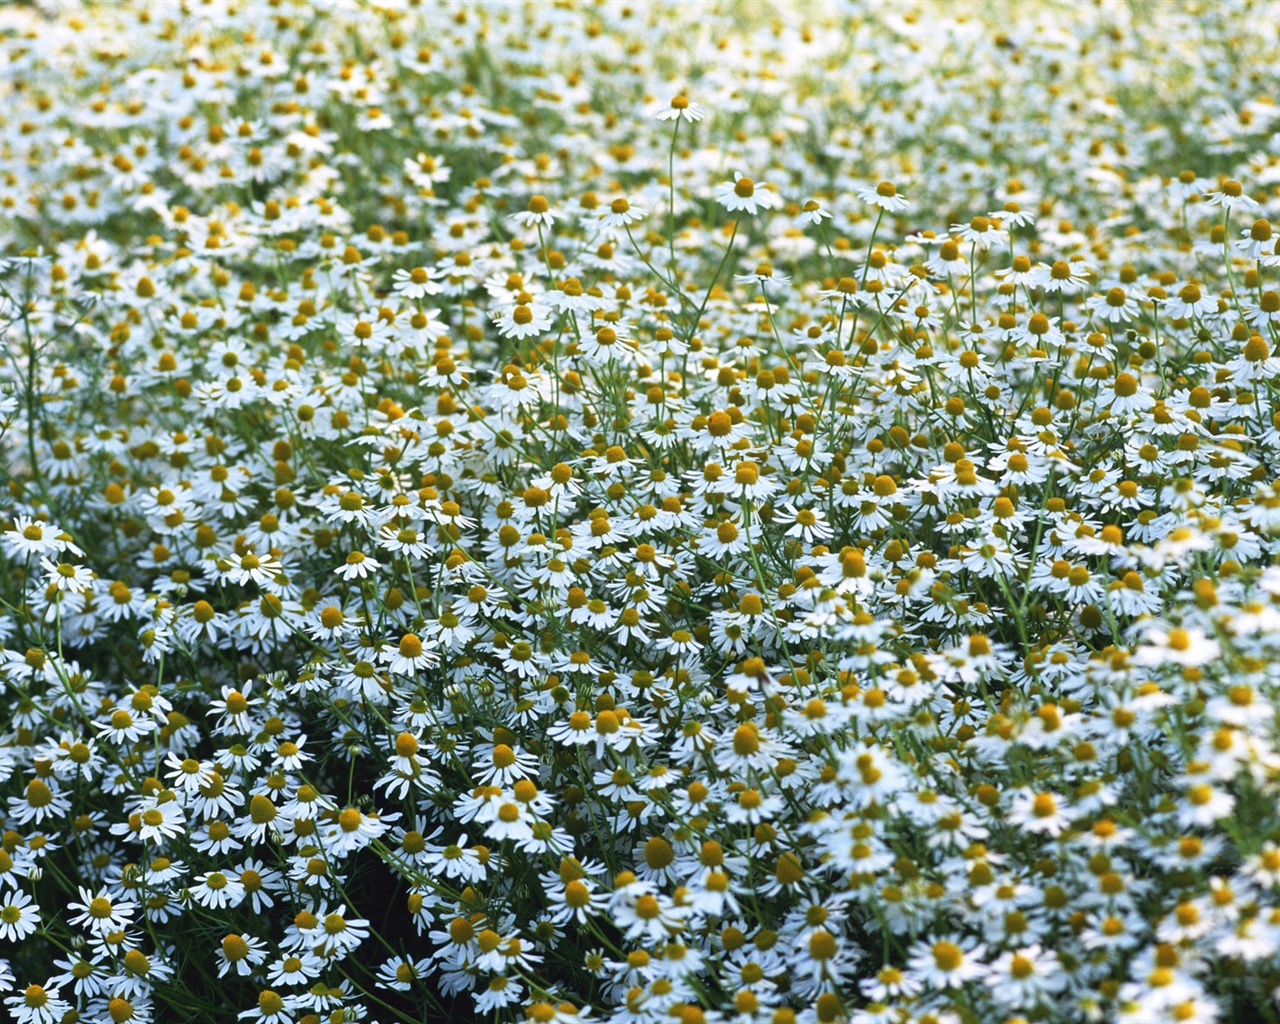 눈같이 흰 꽃 벽지 #10 - 1280x1024